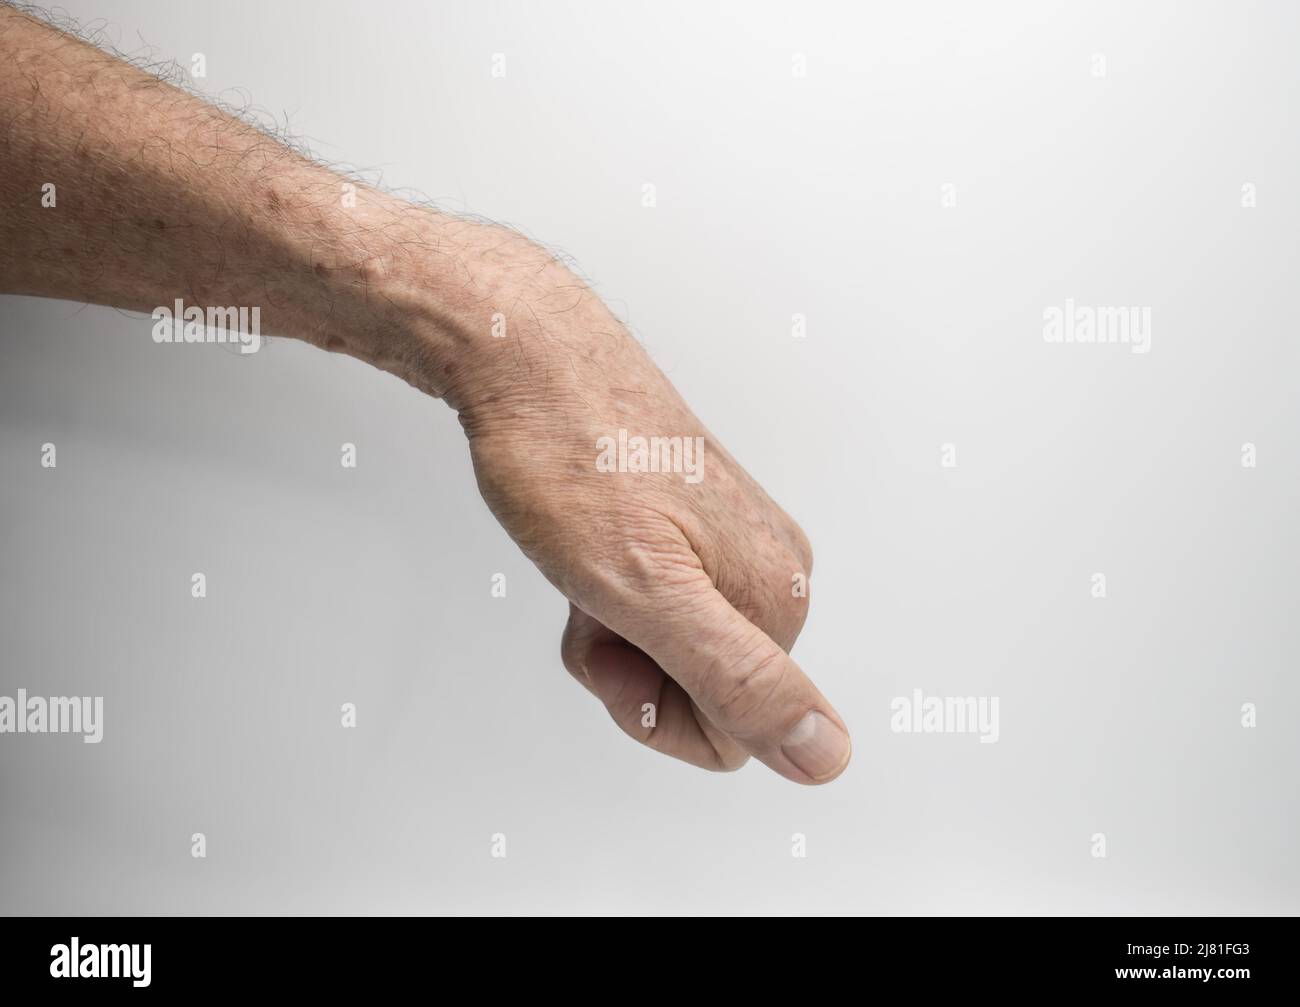 Rigidità muscolare della mano e flessione delle dita dell'anziano asiatico. Foto Stock